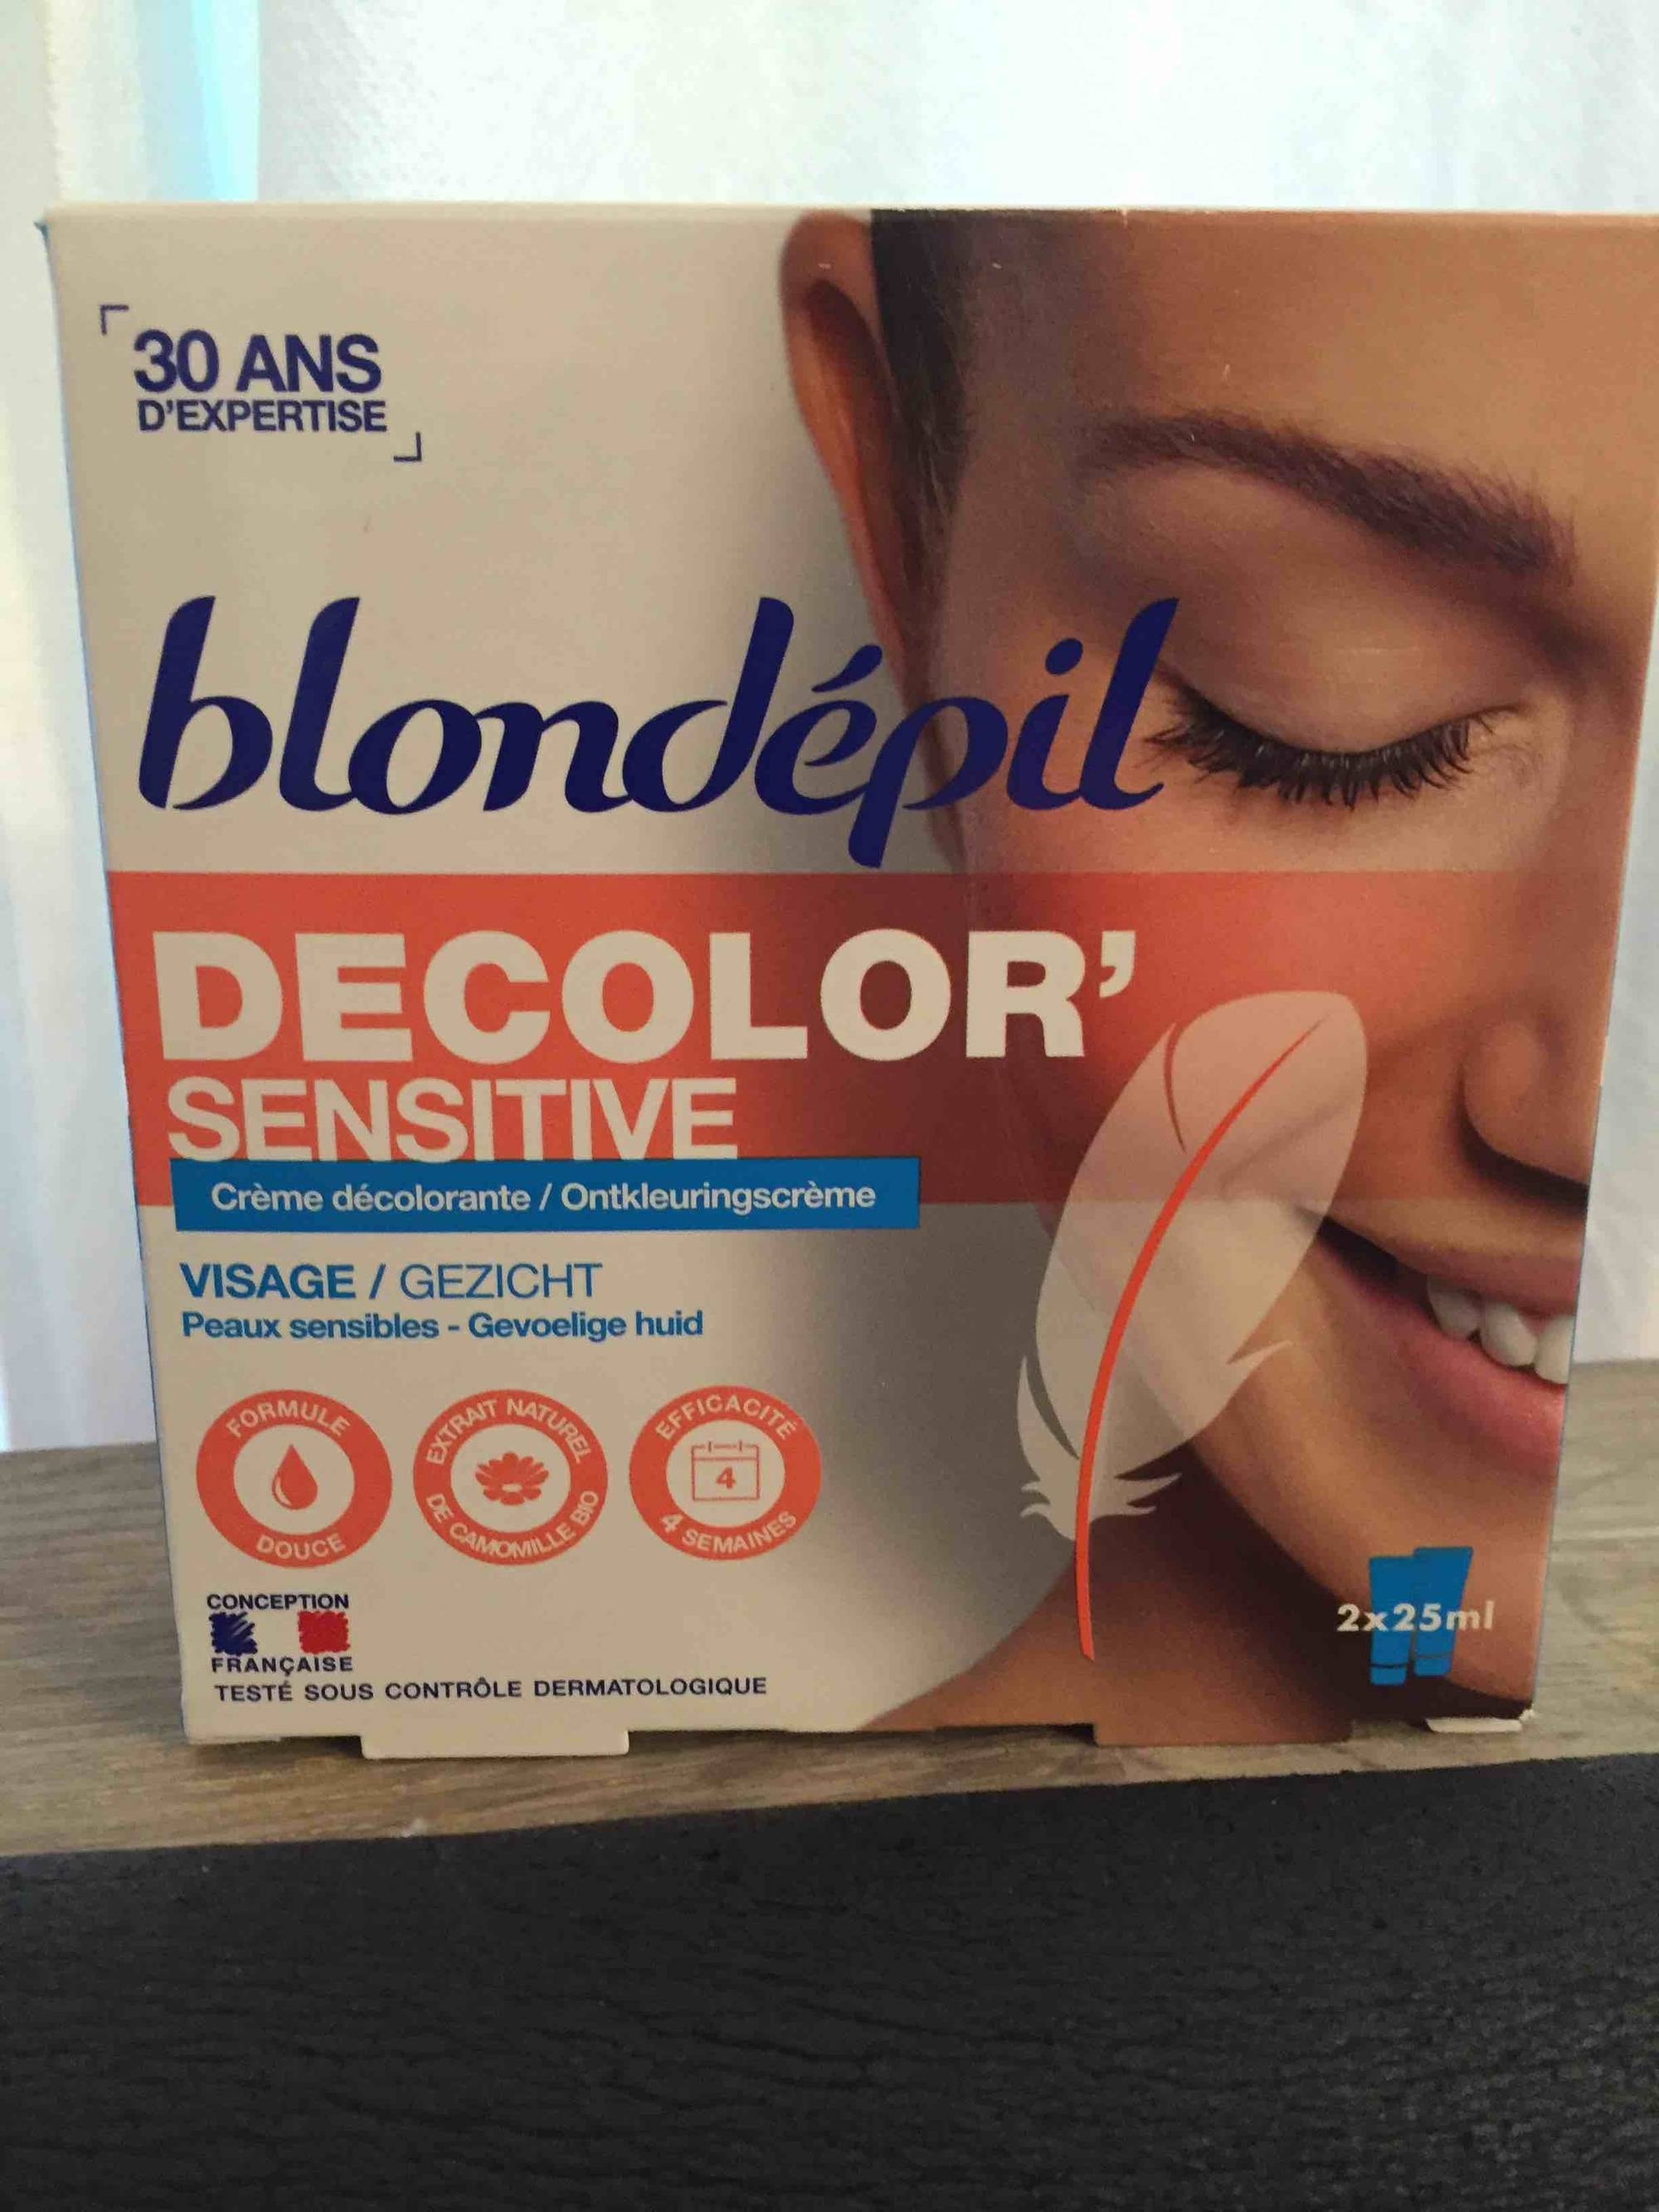 BLONDÉPIL - Decolor' sensitive - Crème décolorante visage